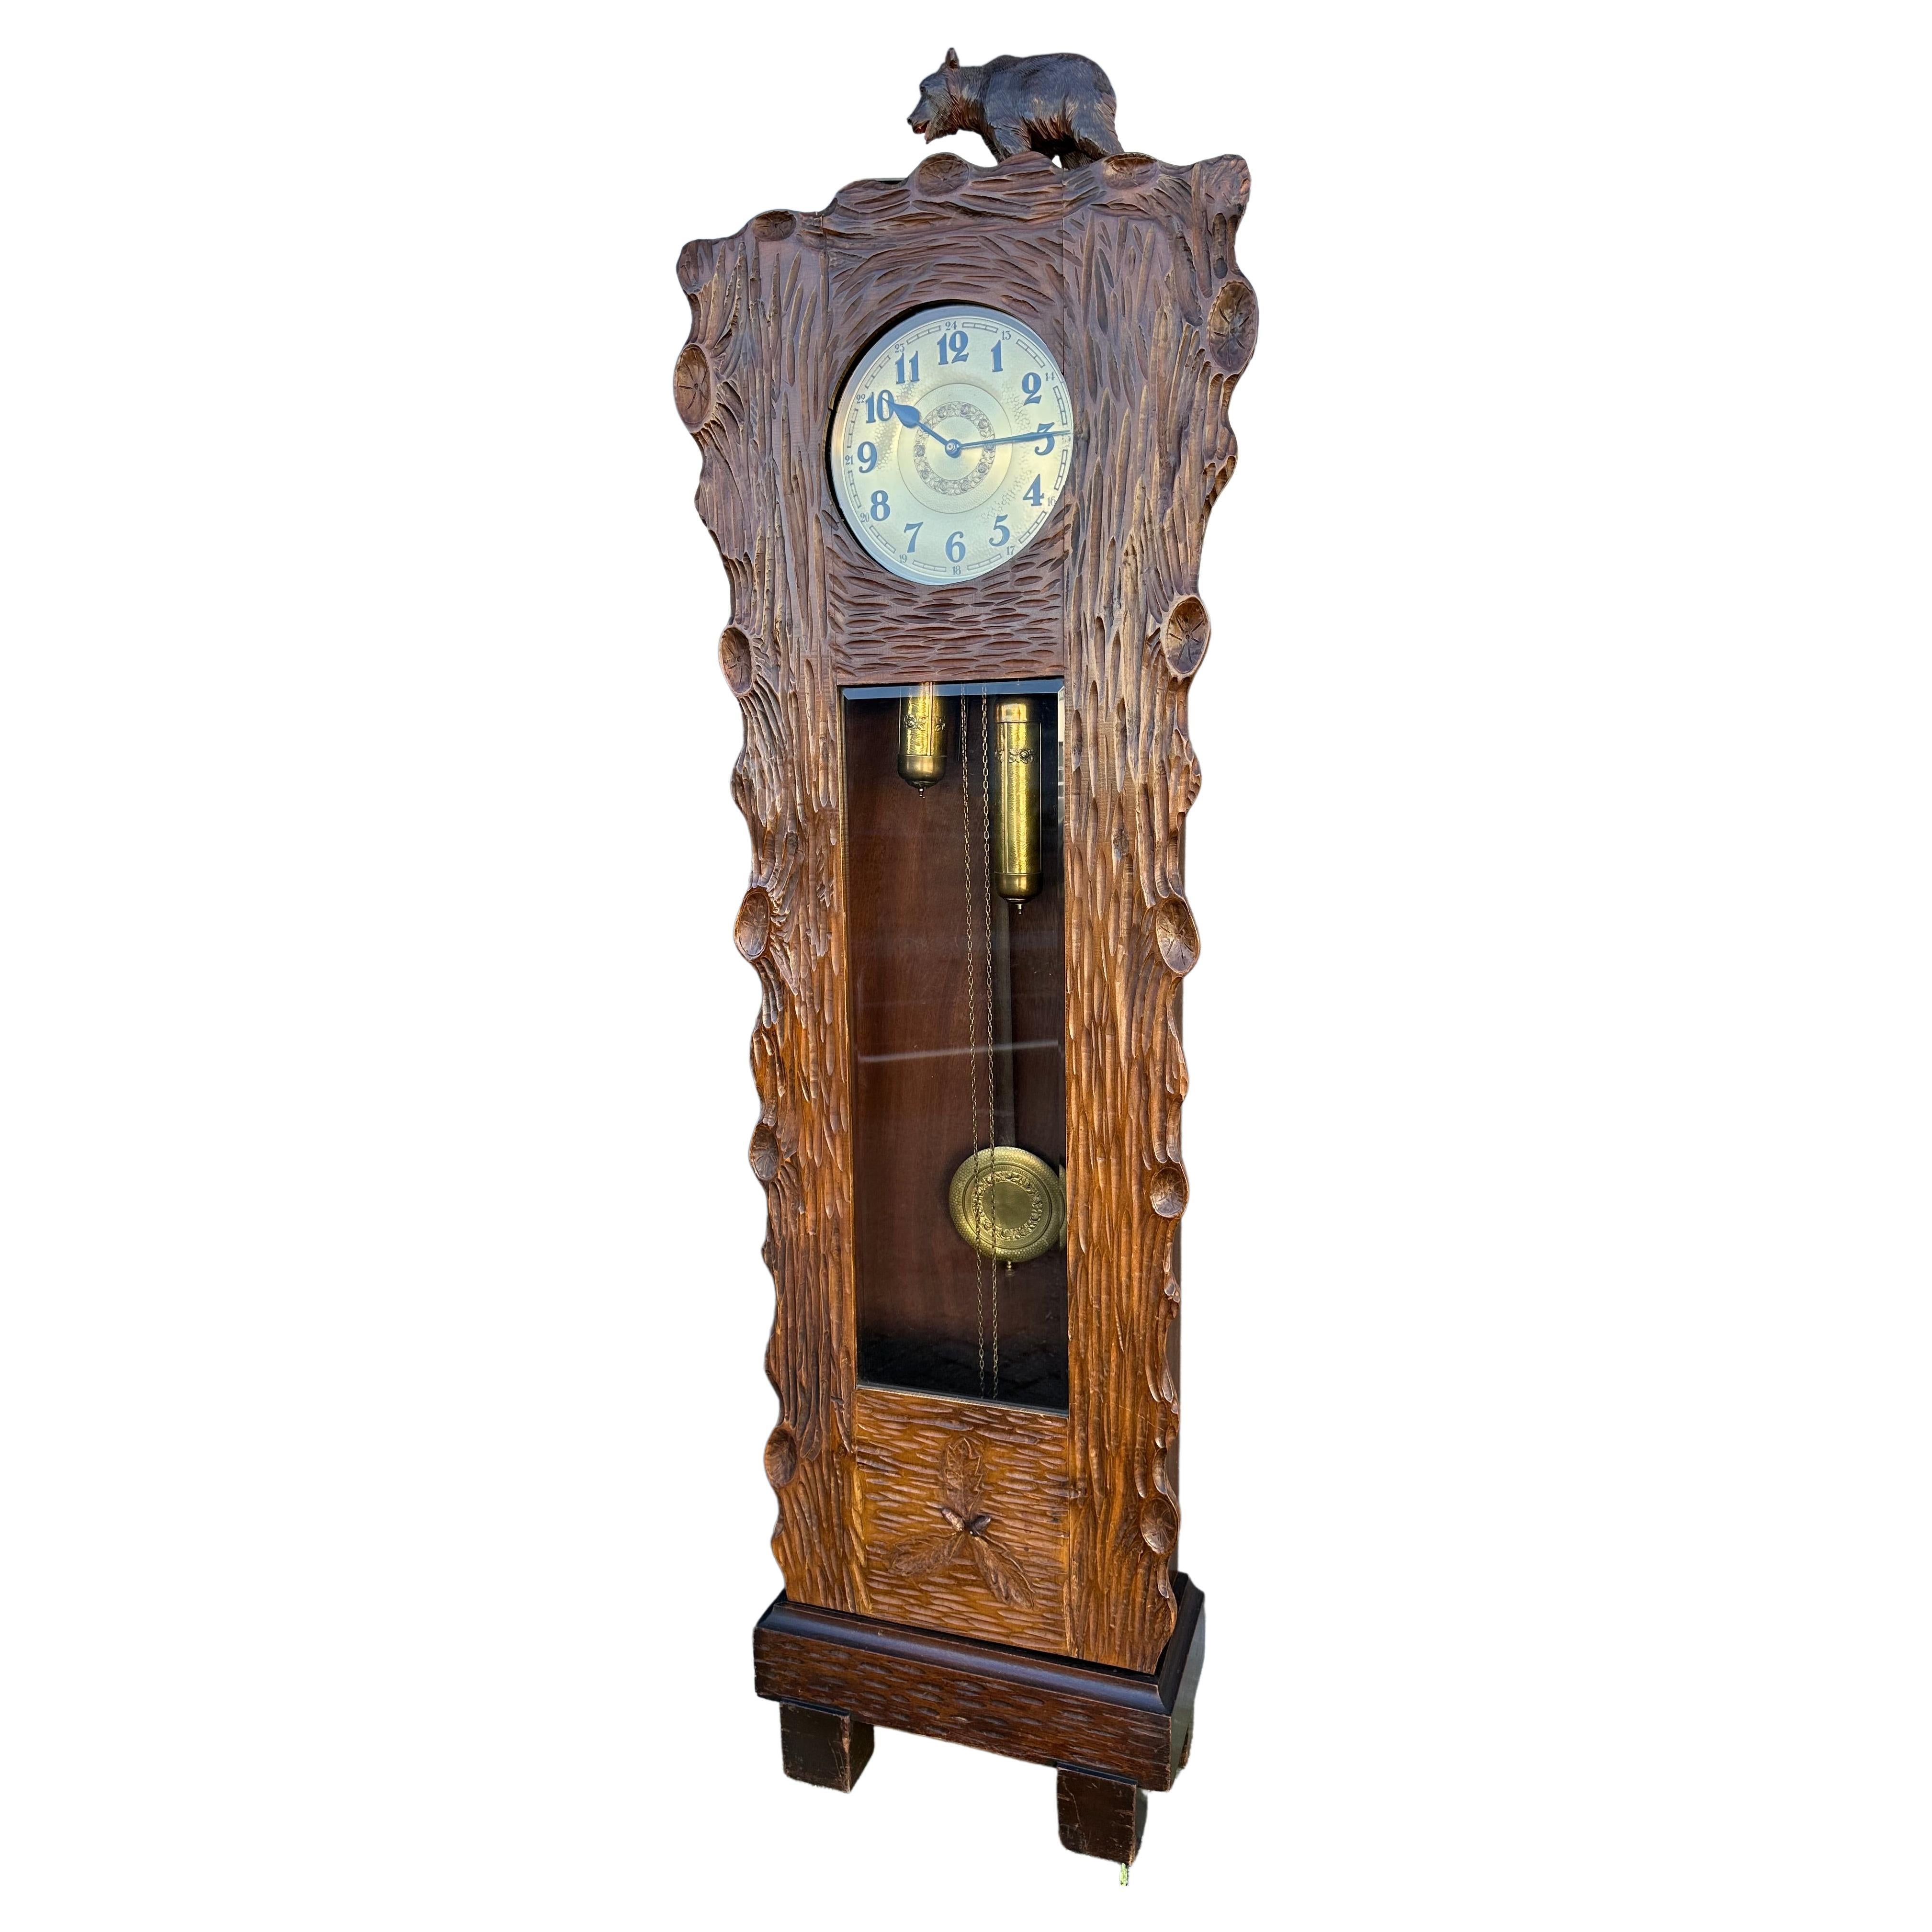 Horloge grand-père ou horloge de salon unique en son genre, sculptée à la main dans un tronc d'arbre de la forêt noire. Ours en vente